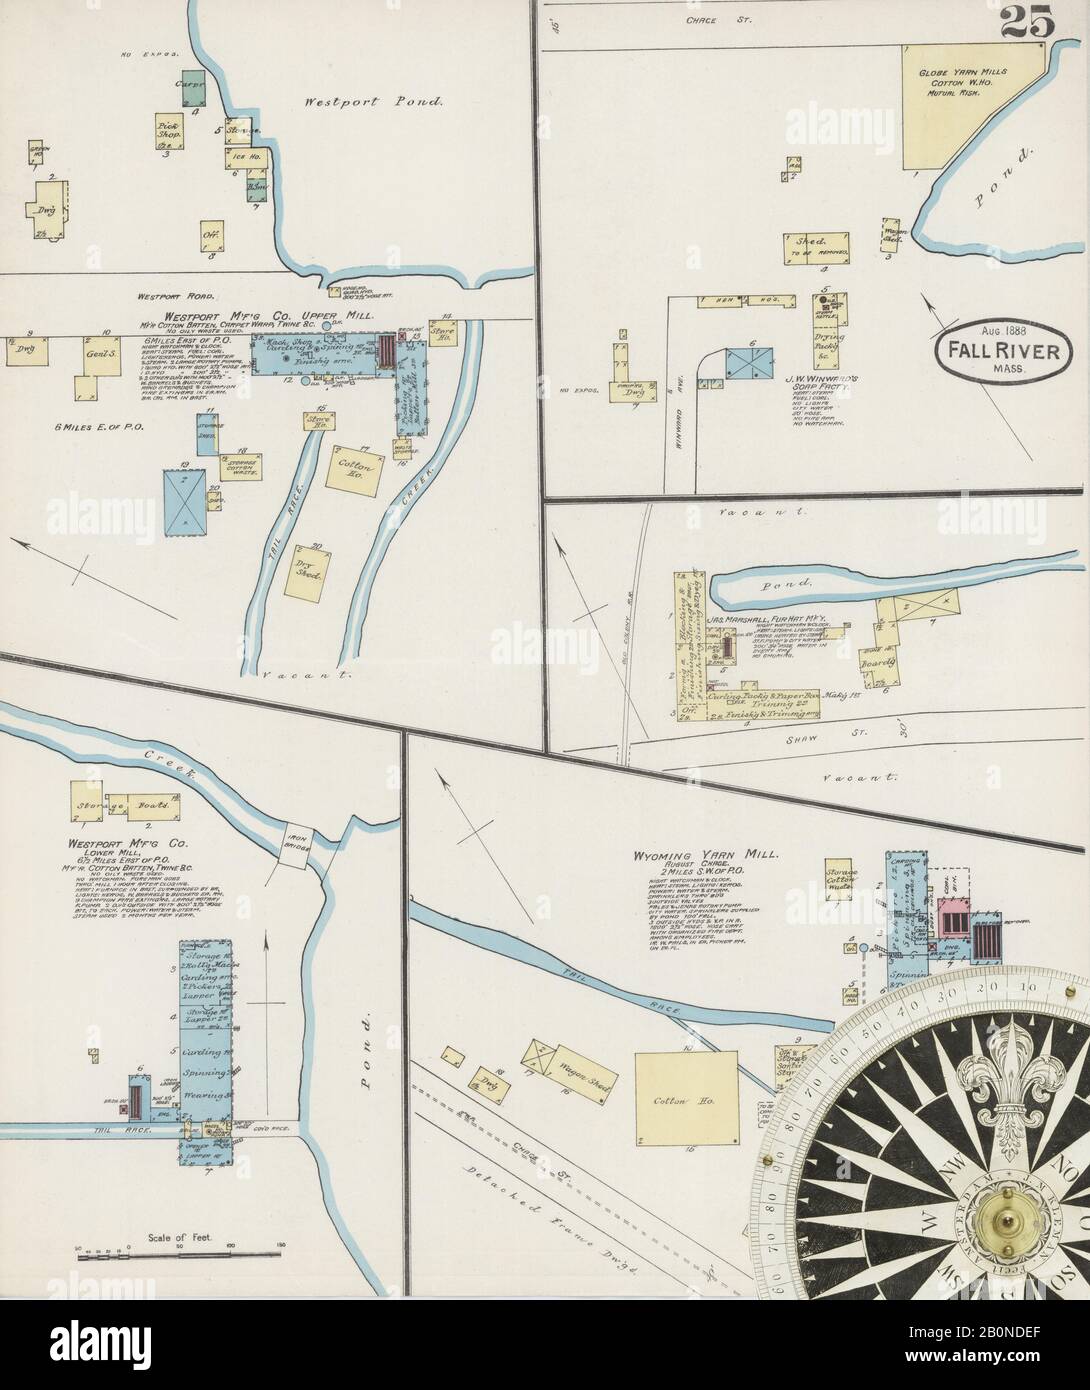 Imagen 25 De Sanborn Fire Insurance Map De Fall River, Condado De Bristol, Massachusetts. Ago 1888. 30 Hoja(s), América, mapa de calles con una brújula del siglo Xix Foto de stock